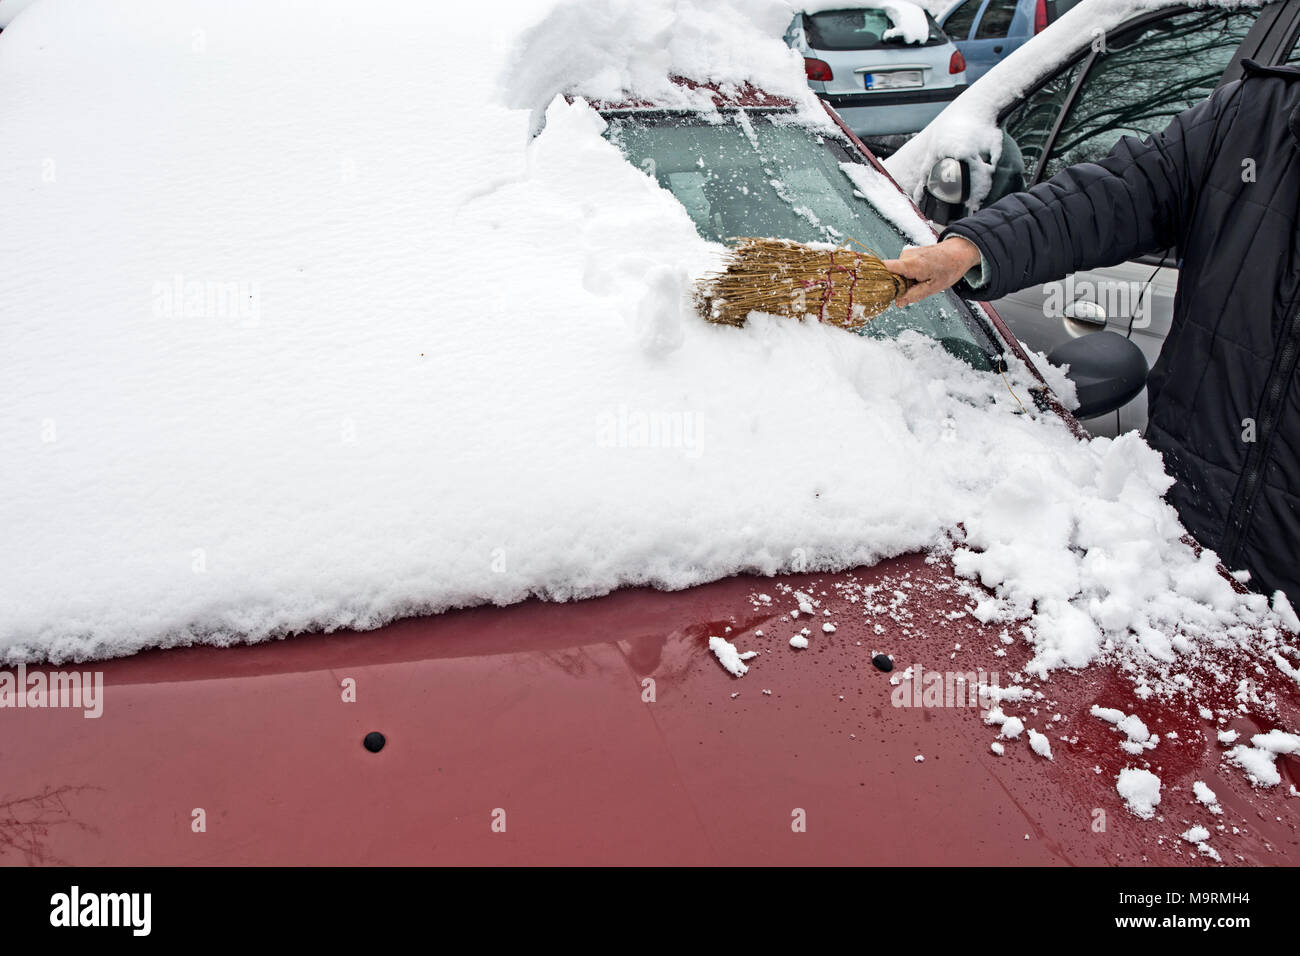 Mit einer Bürste Schnee aus dem Auto entfernen Stockfotografie - Alamy